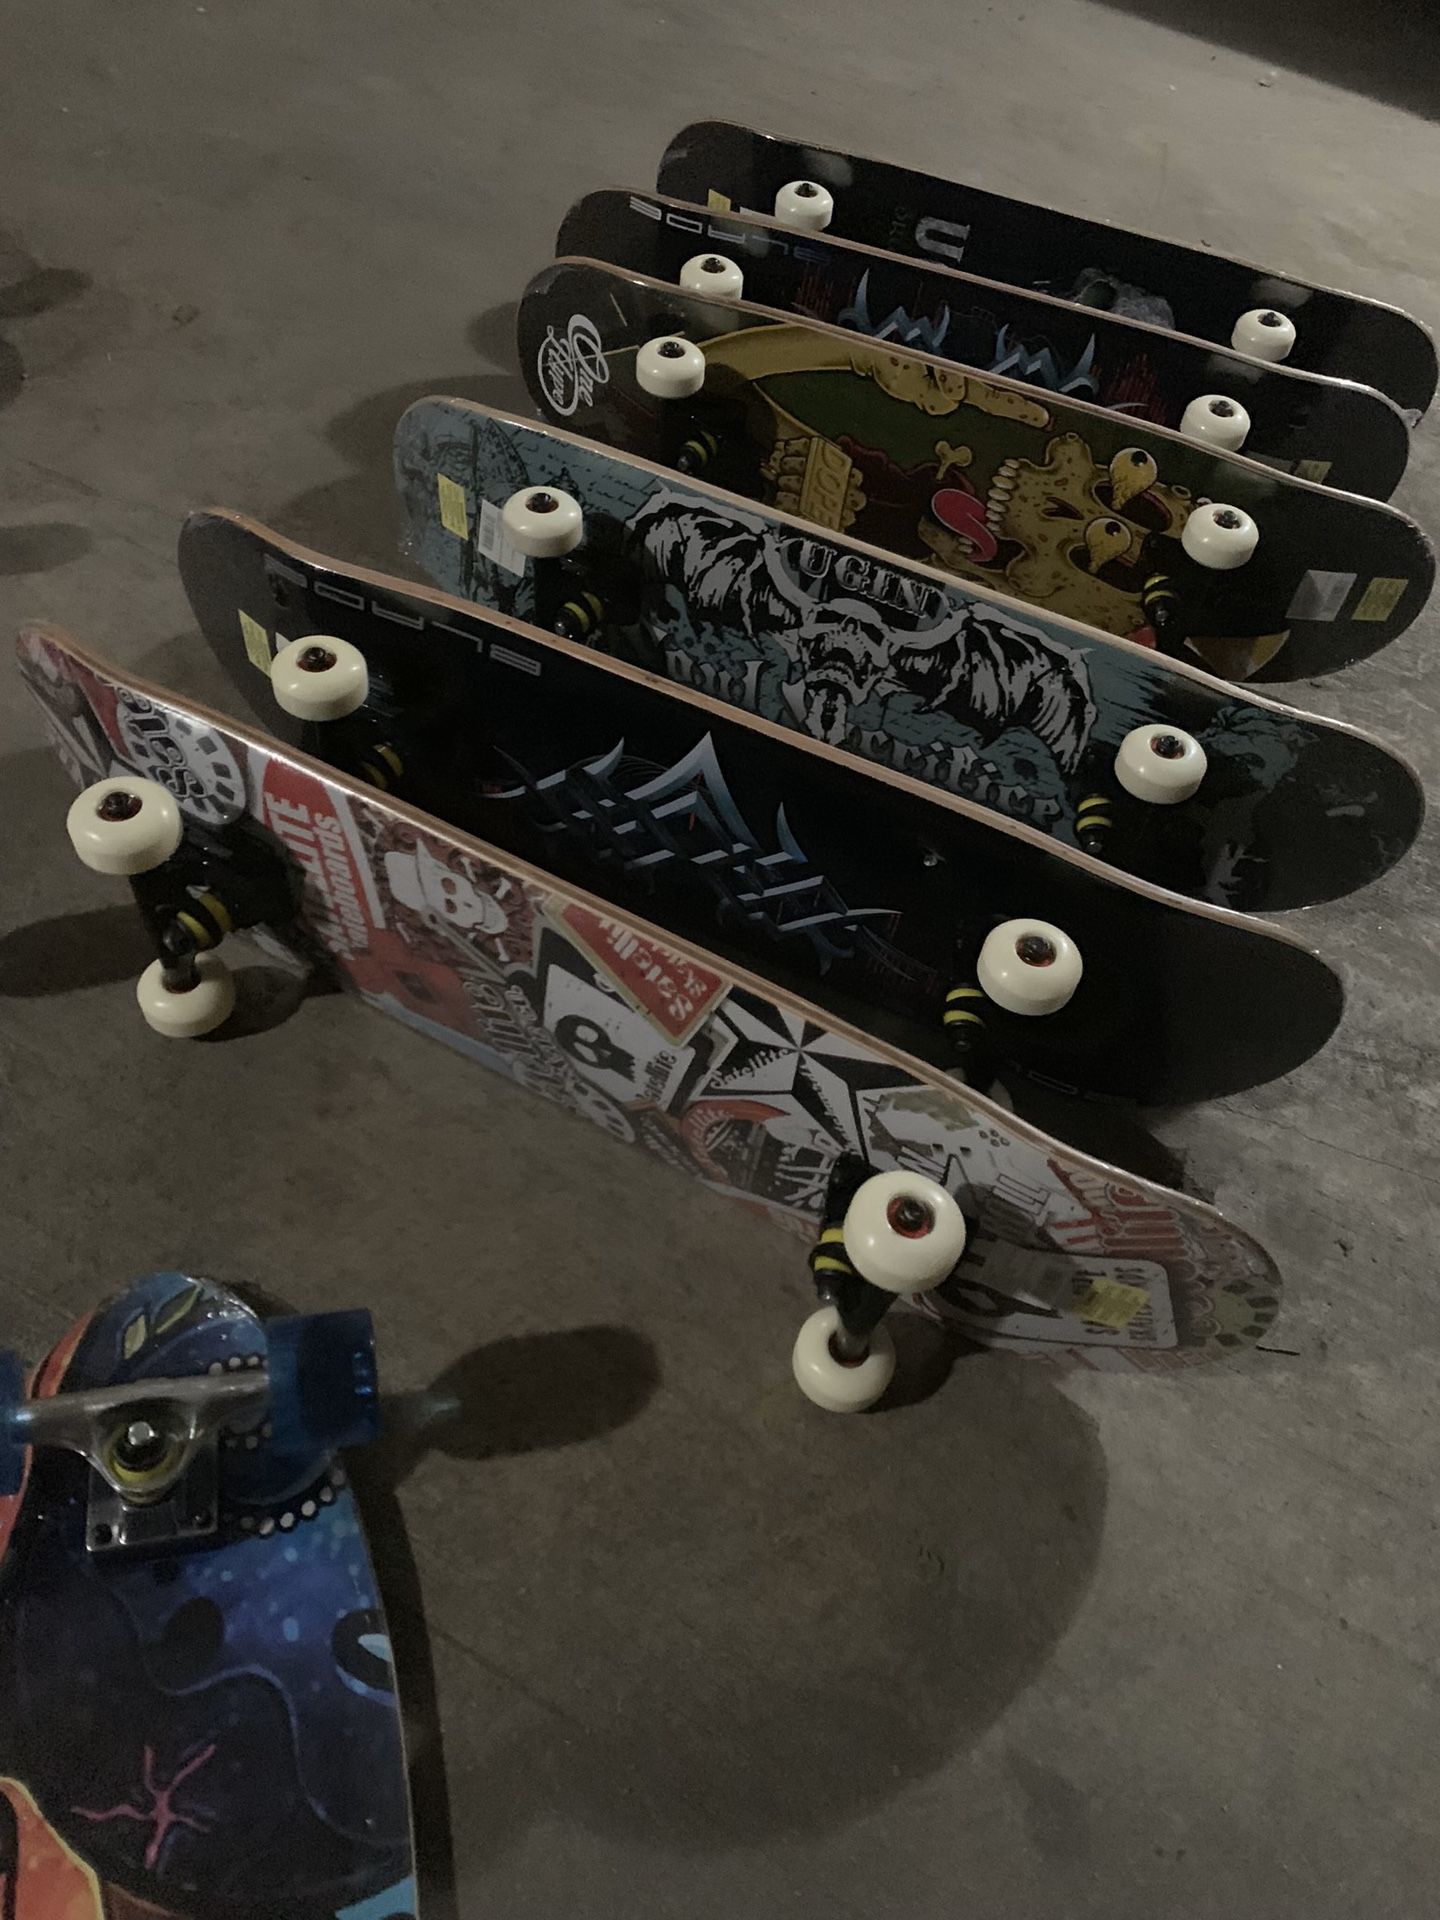 Complete skateboards